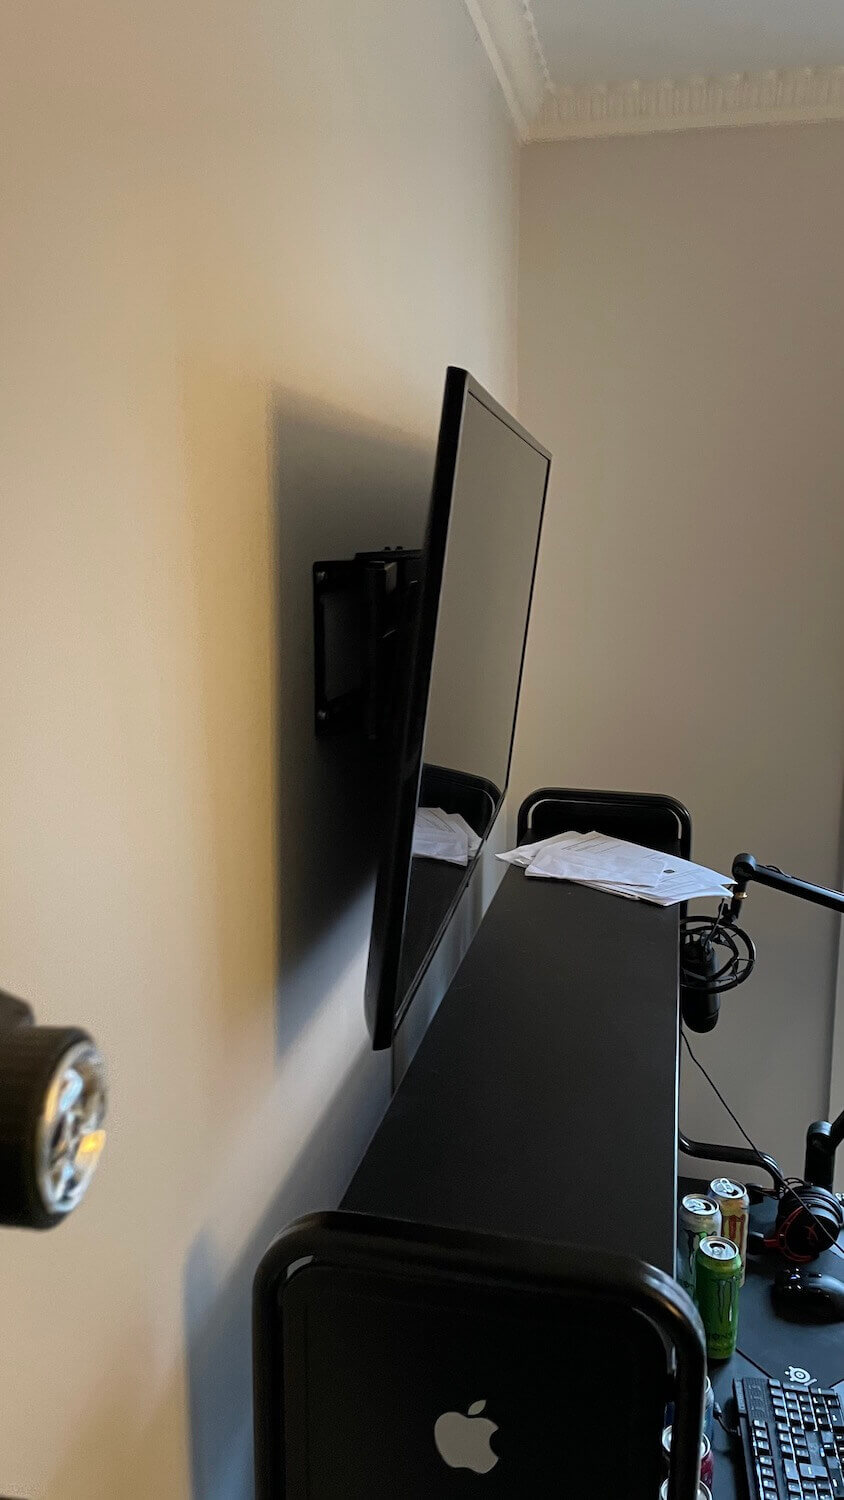 Montering af TV på vægbeslag med tiltfunktion